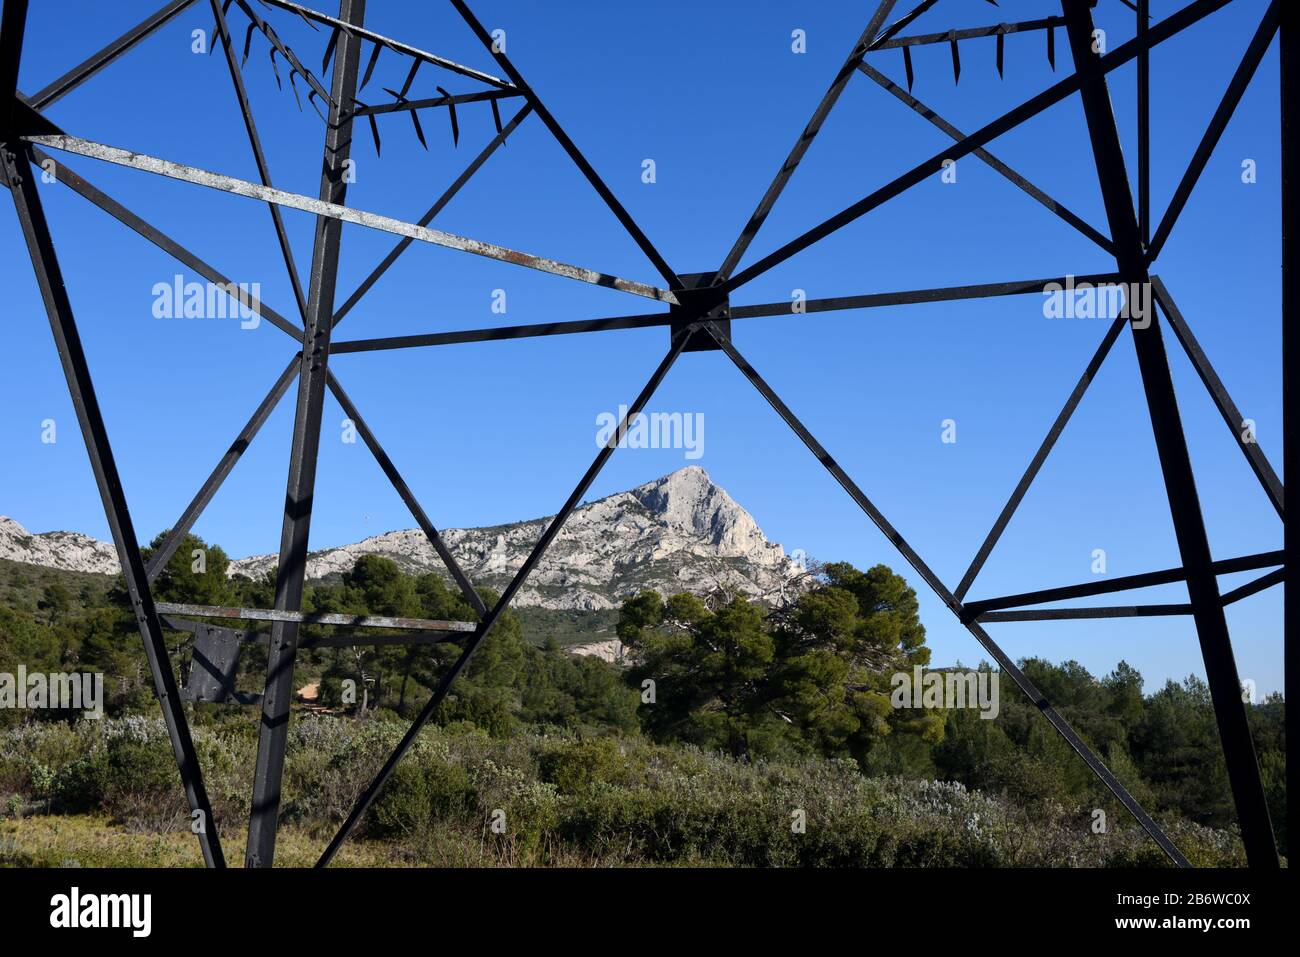 Mont Sainte-Victoire Montagne Encadrée Par Le Cadre En Acier De L'Électricité Pylon, De La Tour De Transmission Ou De La Tour De La Truss Près D'Aix-En-Provence Provence France Banque D'Images